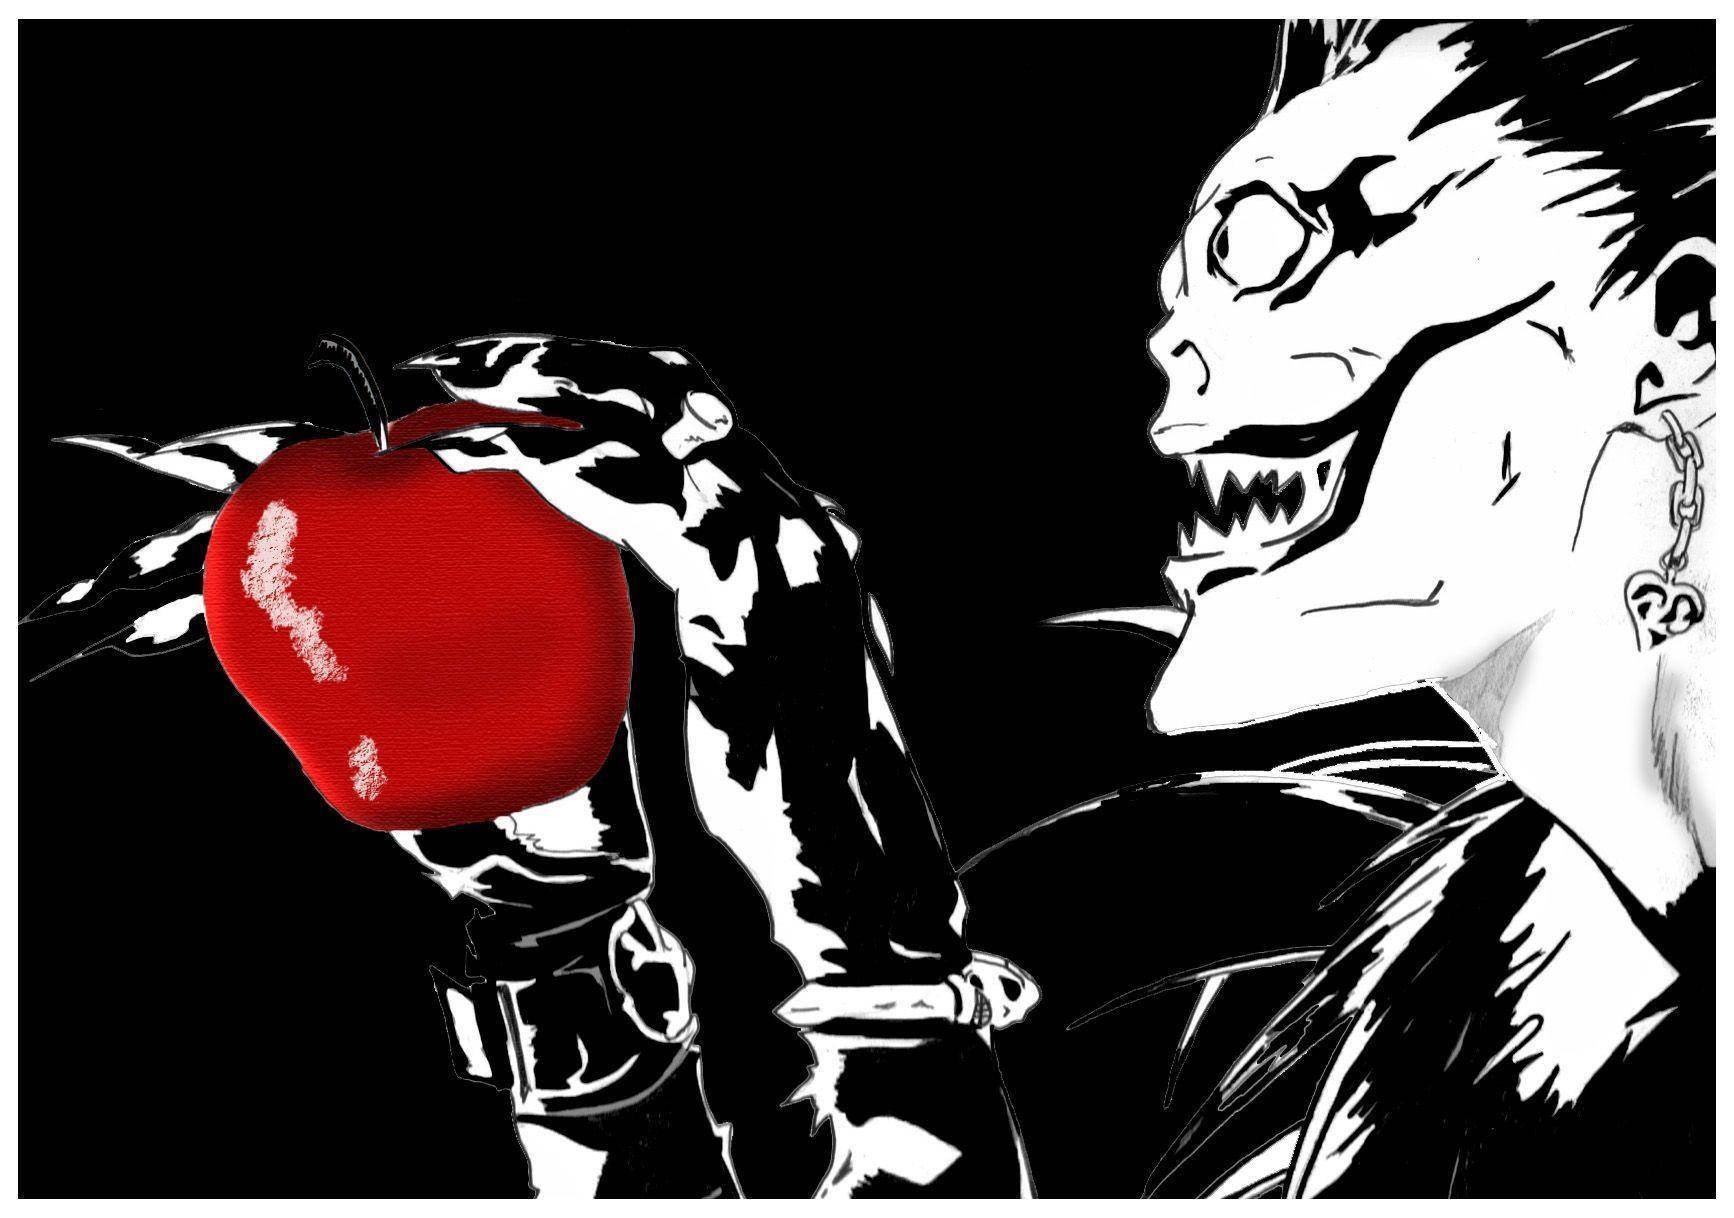 Ryukliebt Rote Äpfel. Wallpaper